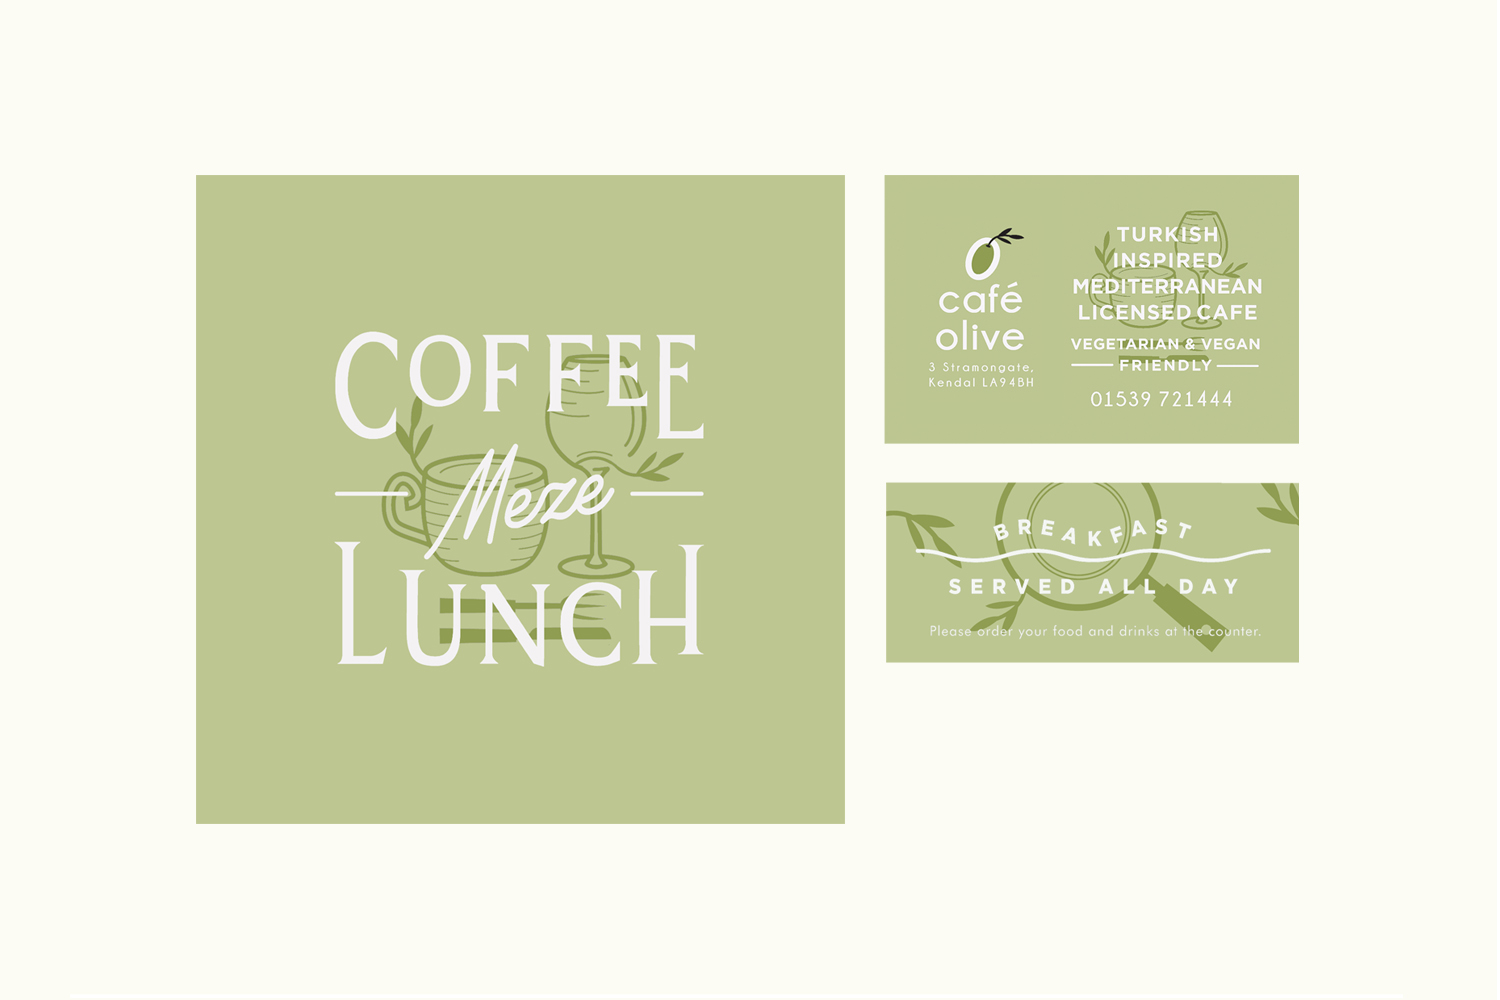 cafe-olive-zeki-michael-ad-business-branding-cafe-meze-lunch-lettering-illustration.JPG